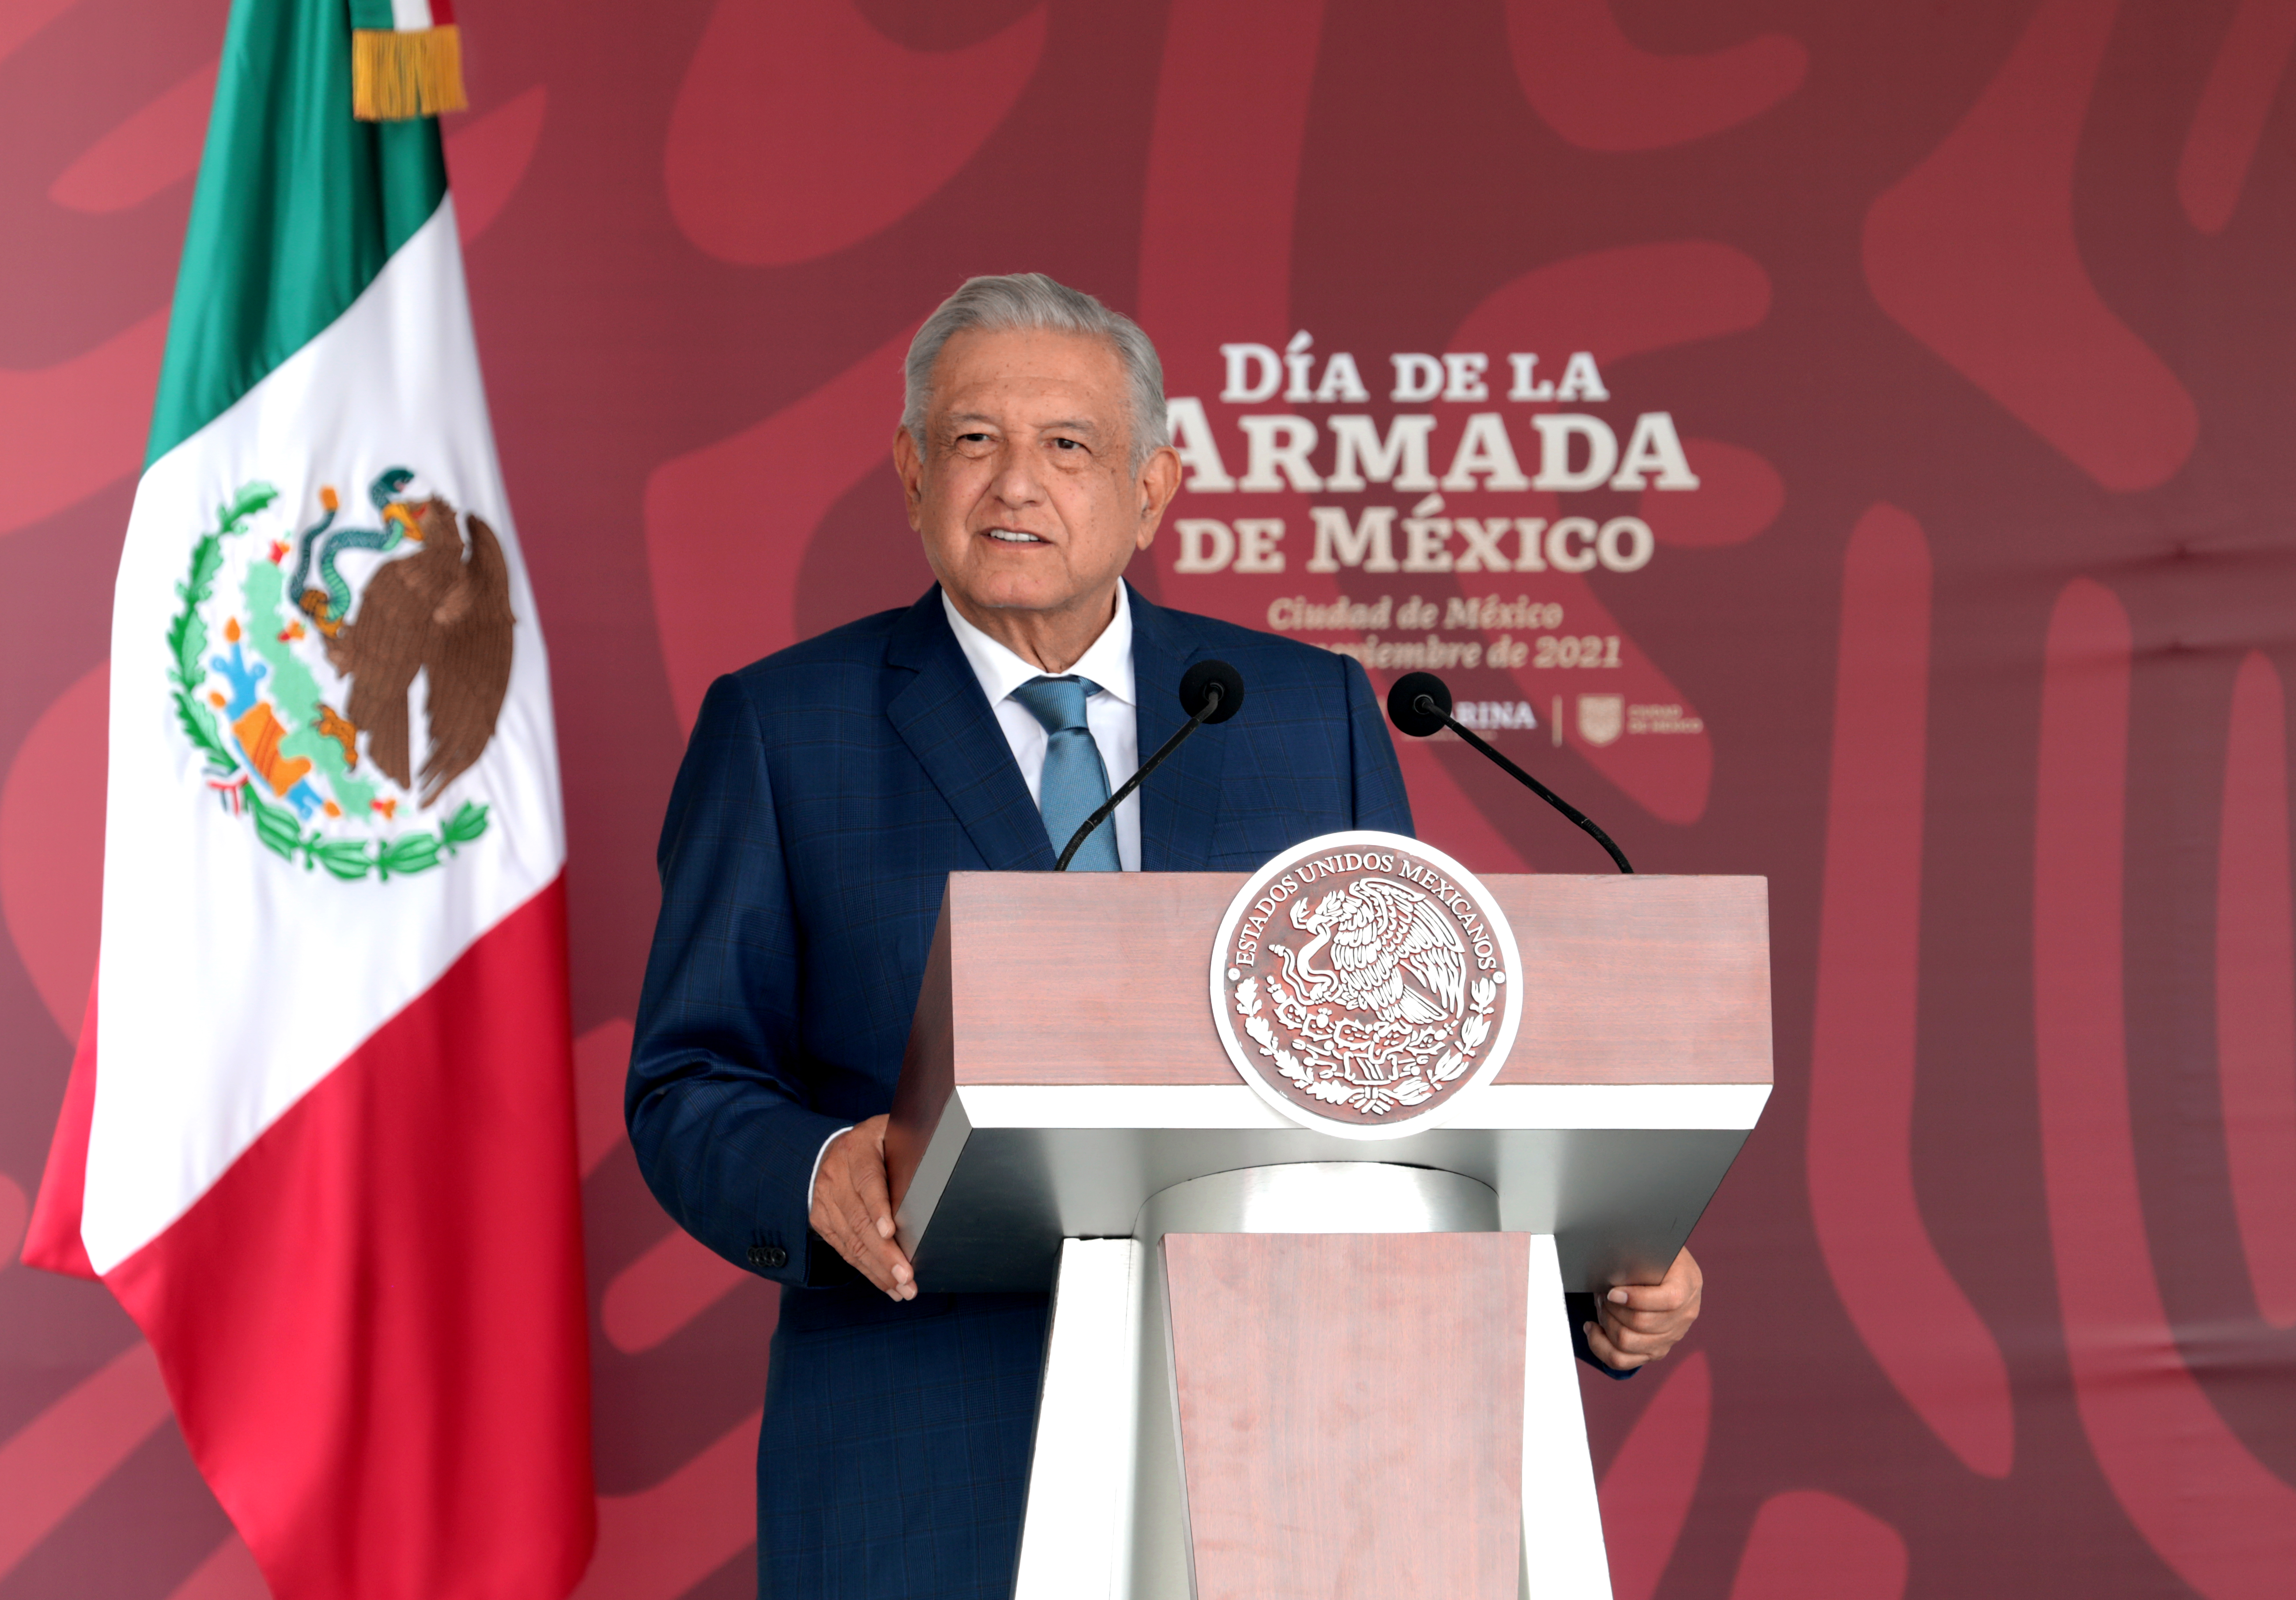 AMLO decidió retirar a Arturo Herrera del dictamen que lo perfilaba como gobernador del Banco de México (Foto: Presidencia)

